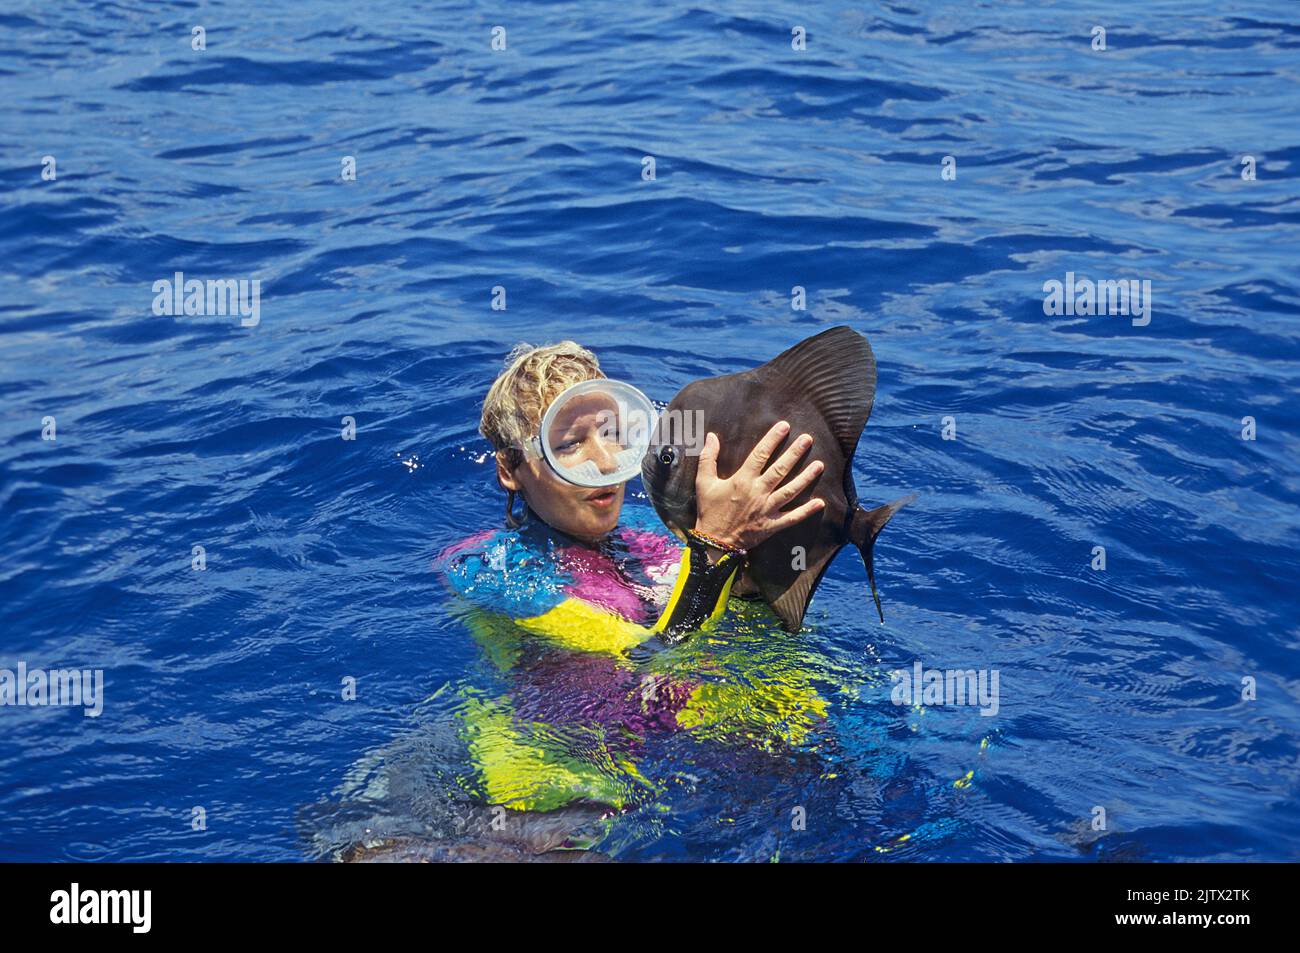 Poisson-matte (Platax teira) sautant de l'eau directement dans les mains d'un snorkeler, accès réflexive, Maldives, océan Indien, Asie Banque D'Images